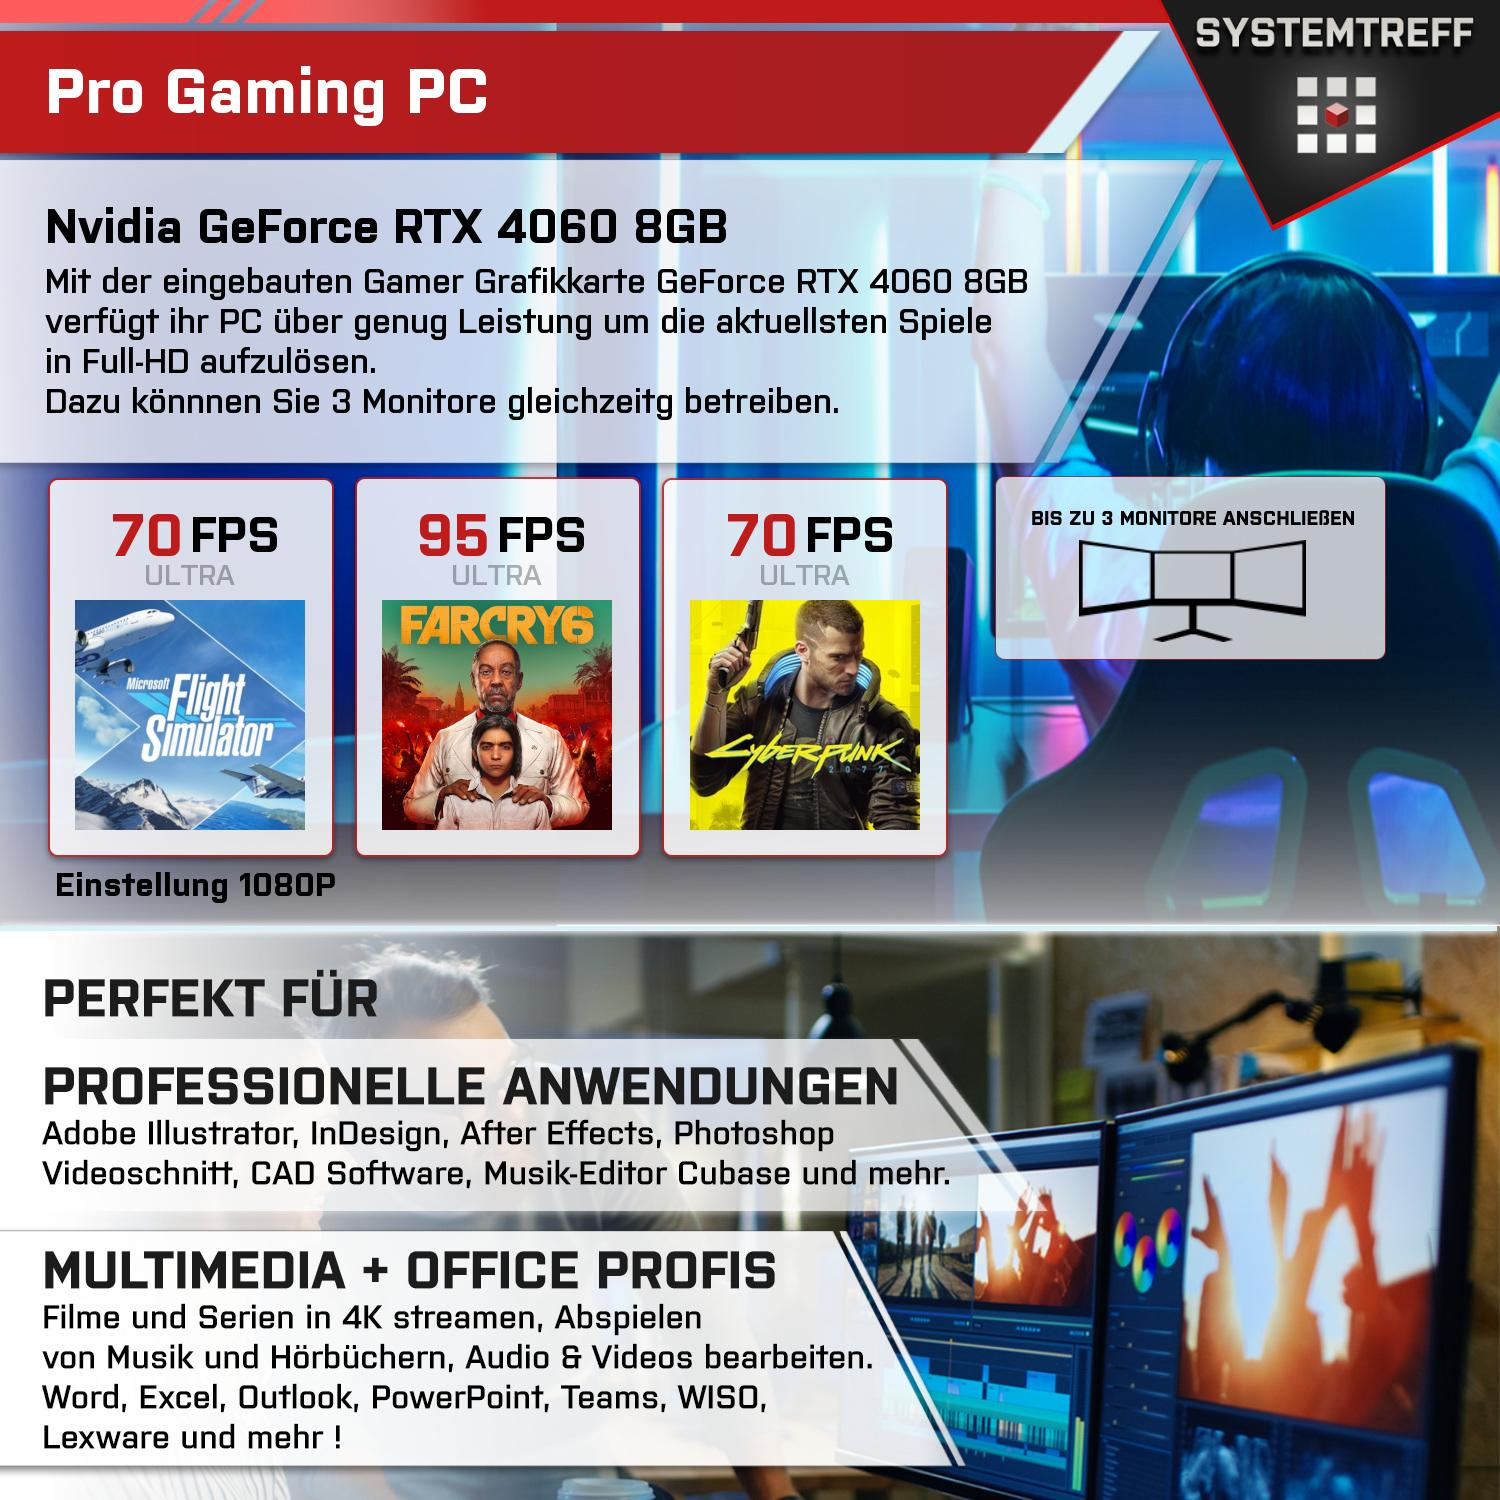 SYSTEMTREFF Gaming Komplett mit 8GB PC Ryzen Komplett 7600 Prozessor, GB GB mit 4060 DLSS GDDR6 RAM, 32 mSSD, 7600, GB Nvidia RTX 3, GeForce 1000 5 8 AMD